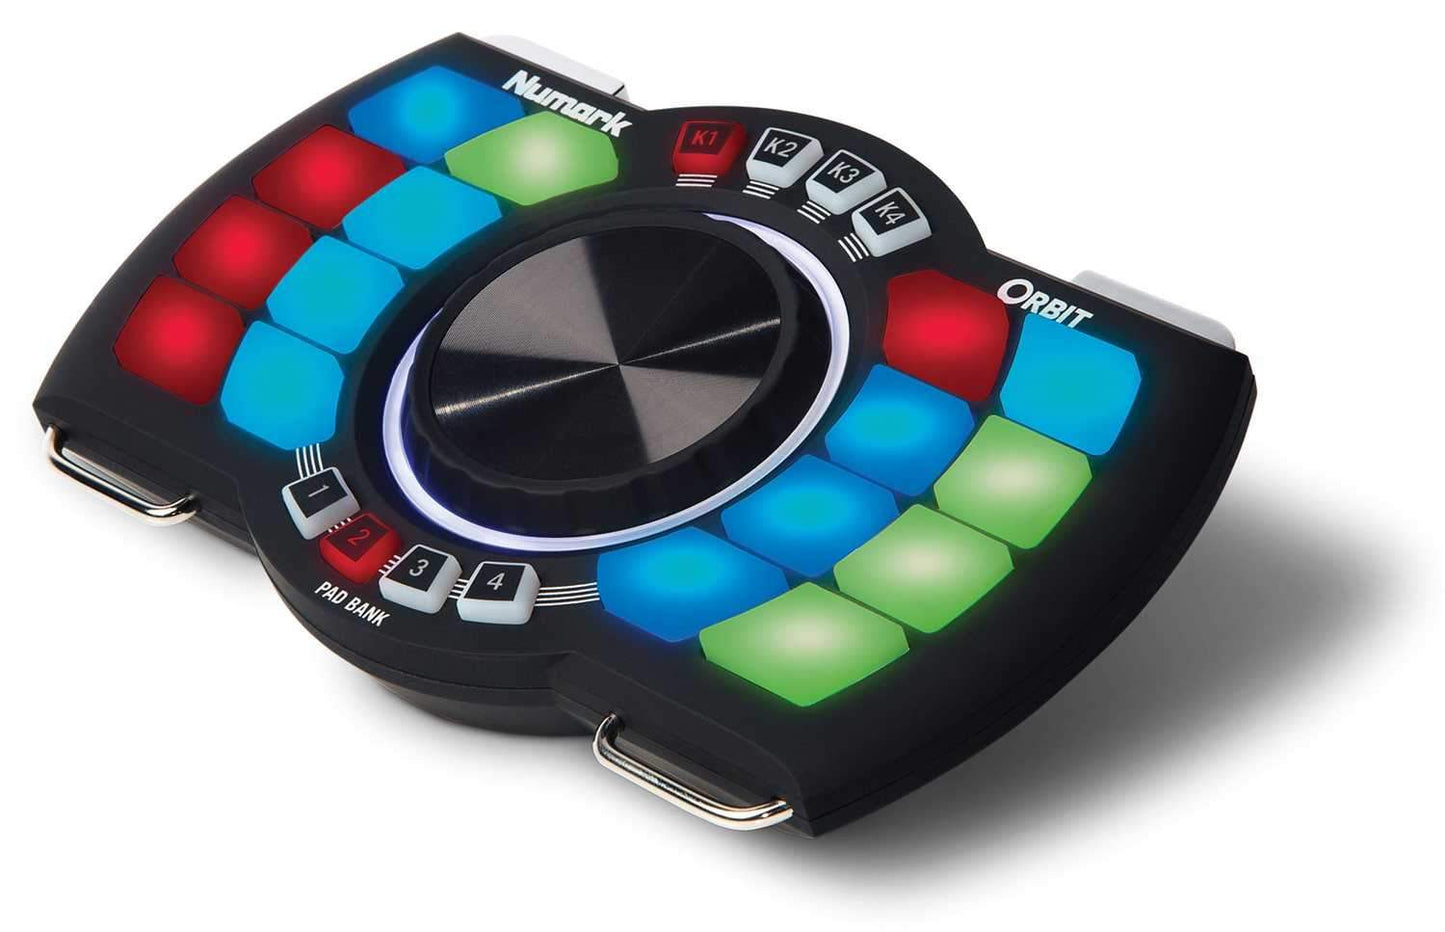 Numark Orbit Wireless Handheld DJ Controller - PSSL ProSound and Stage Lighting